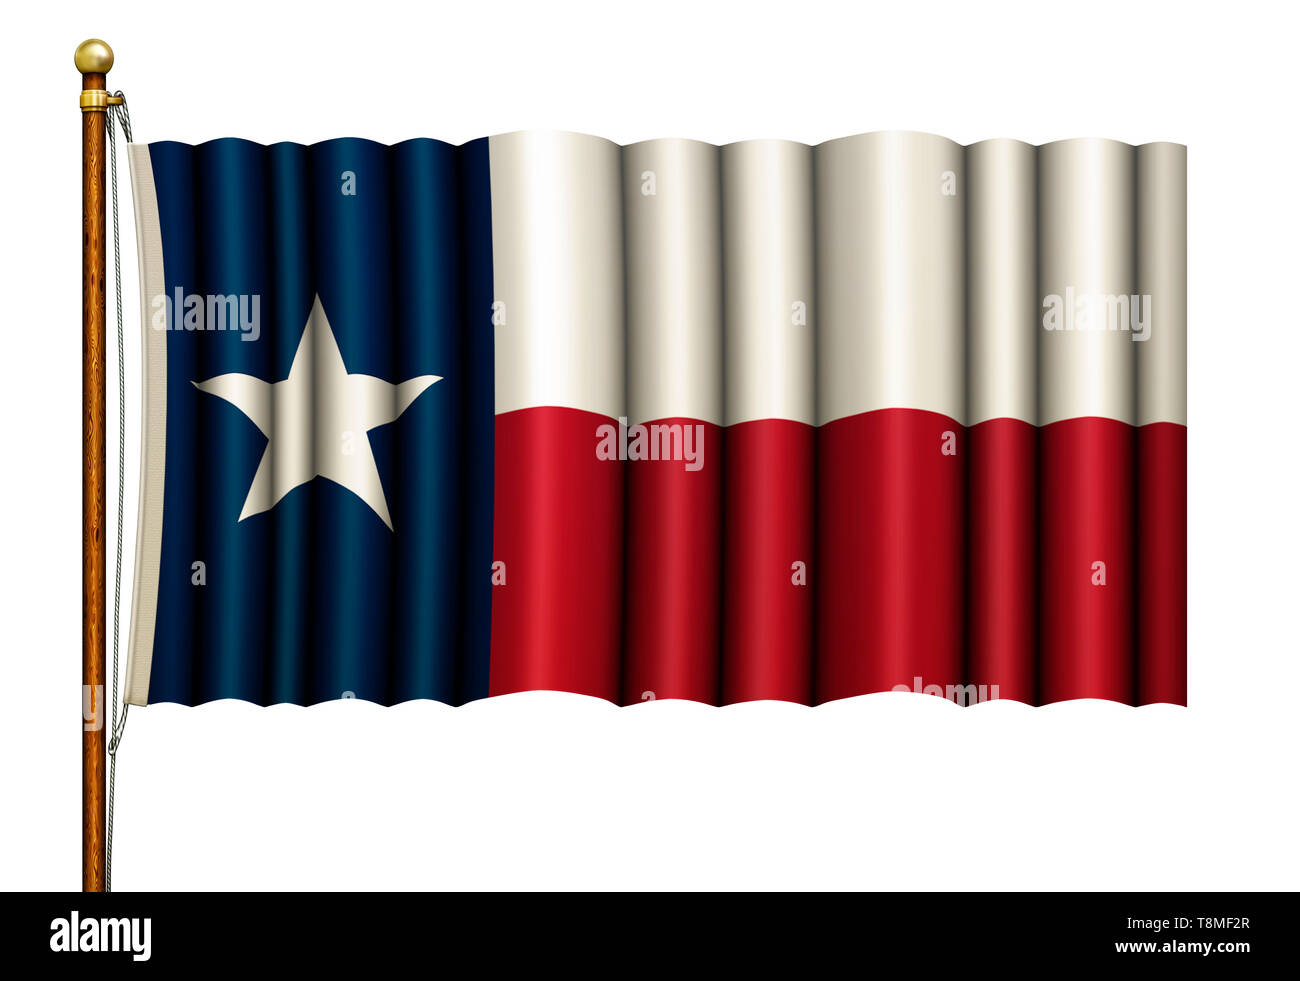 Stilisierte Texas flag Waving aus Holz und Messing flag Pole. 3D-Darstellung Stockfoto